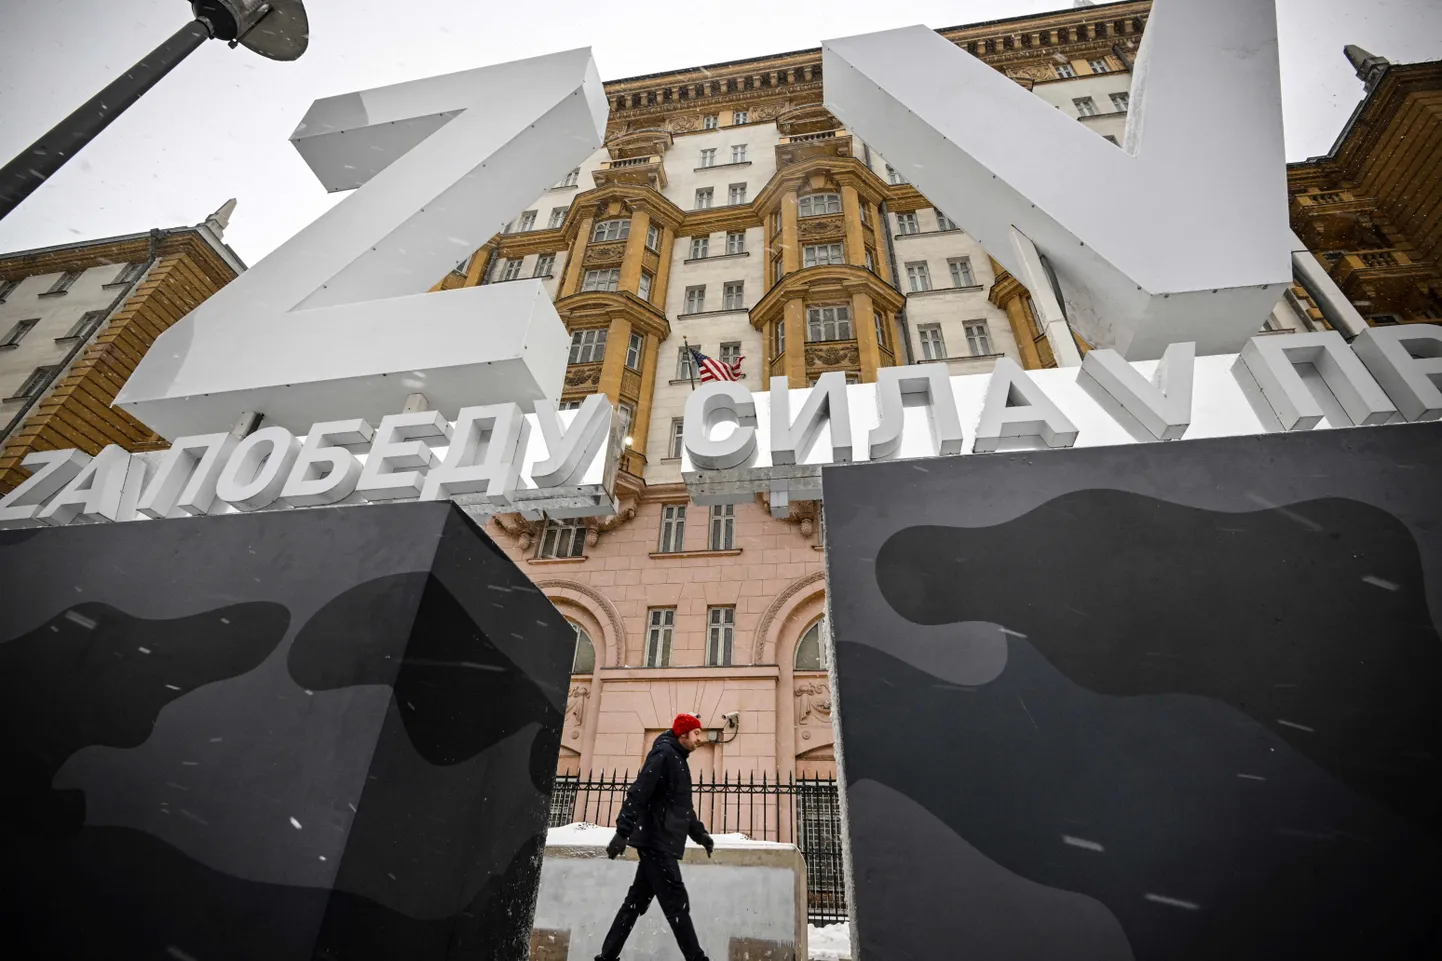 Ameerika Ühendriikide saatkond Moskvas. Hoone ette paigaldati suured sõda õigustavad sümbolid.